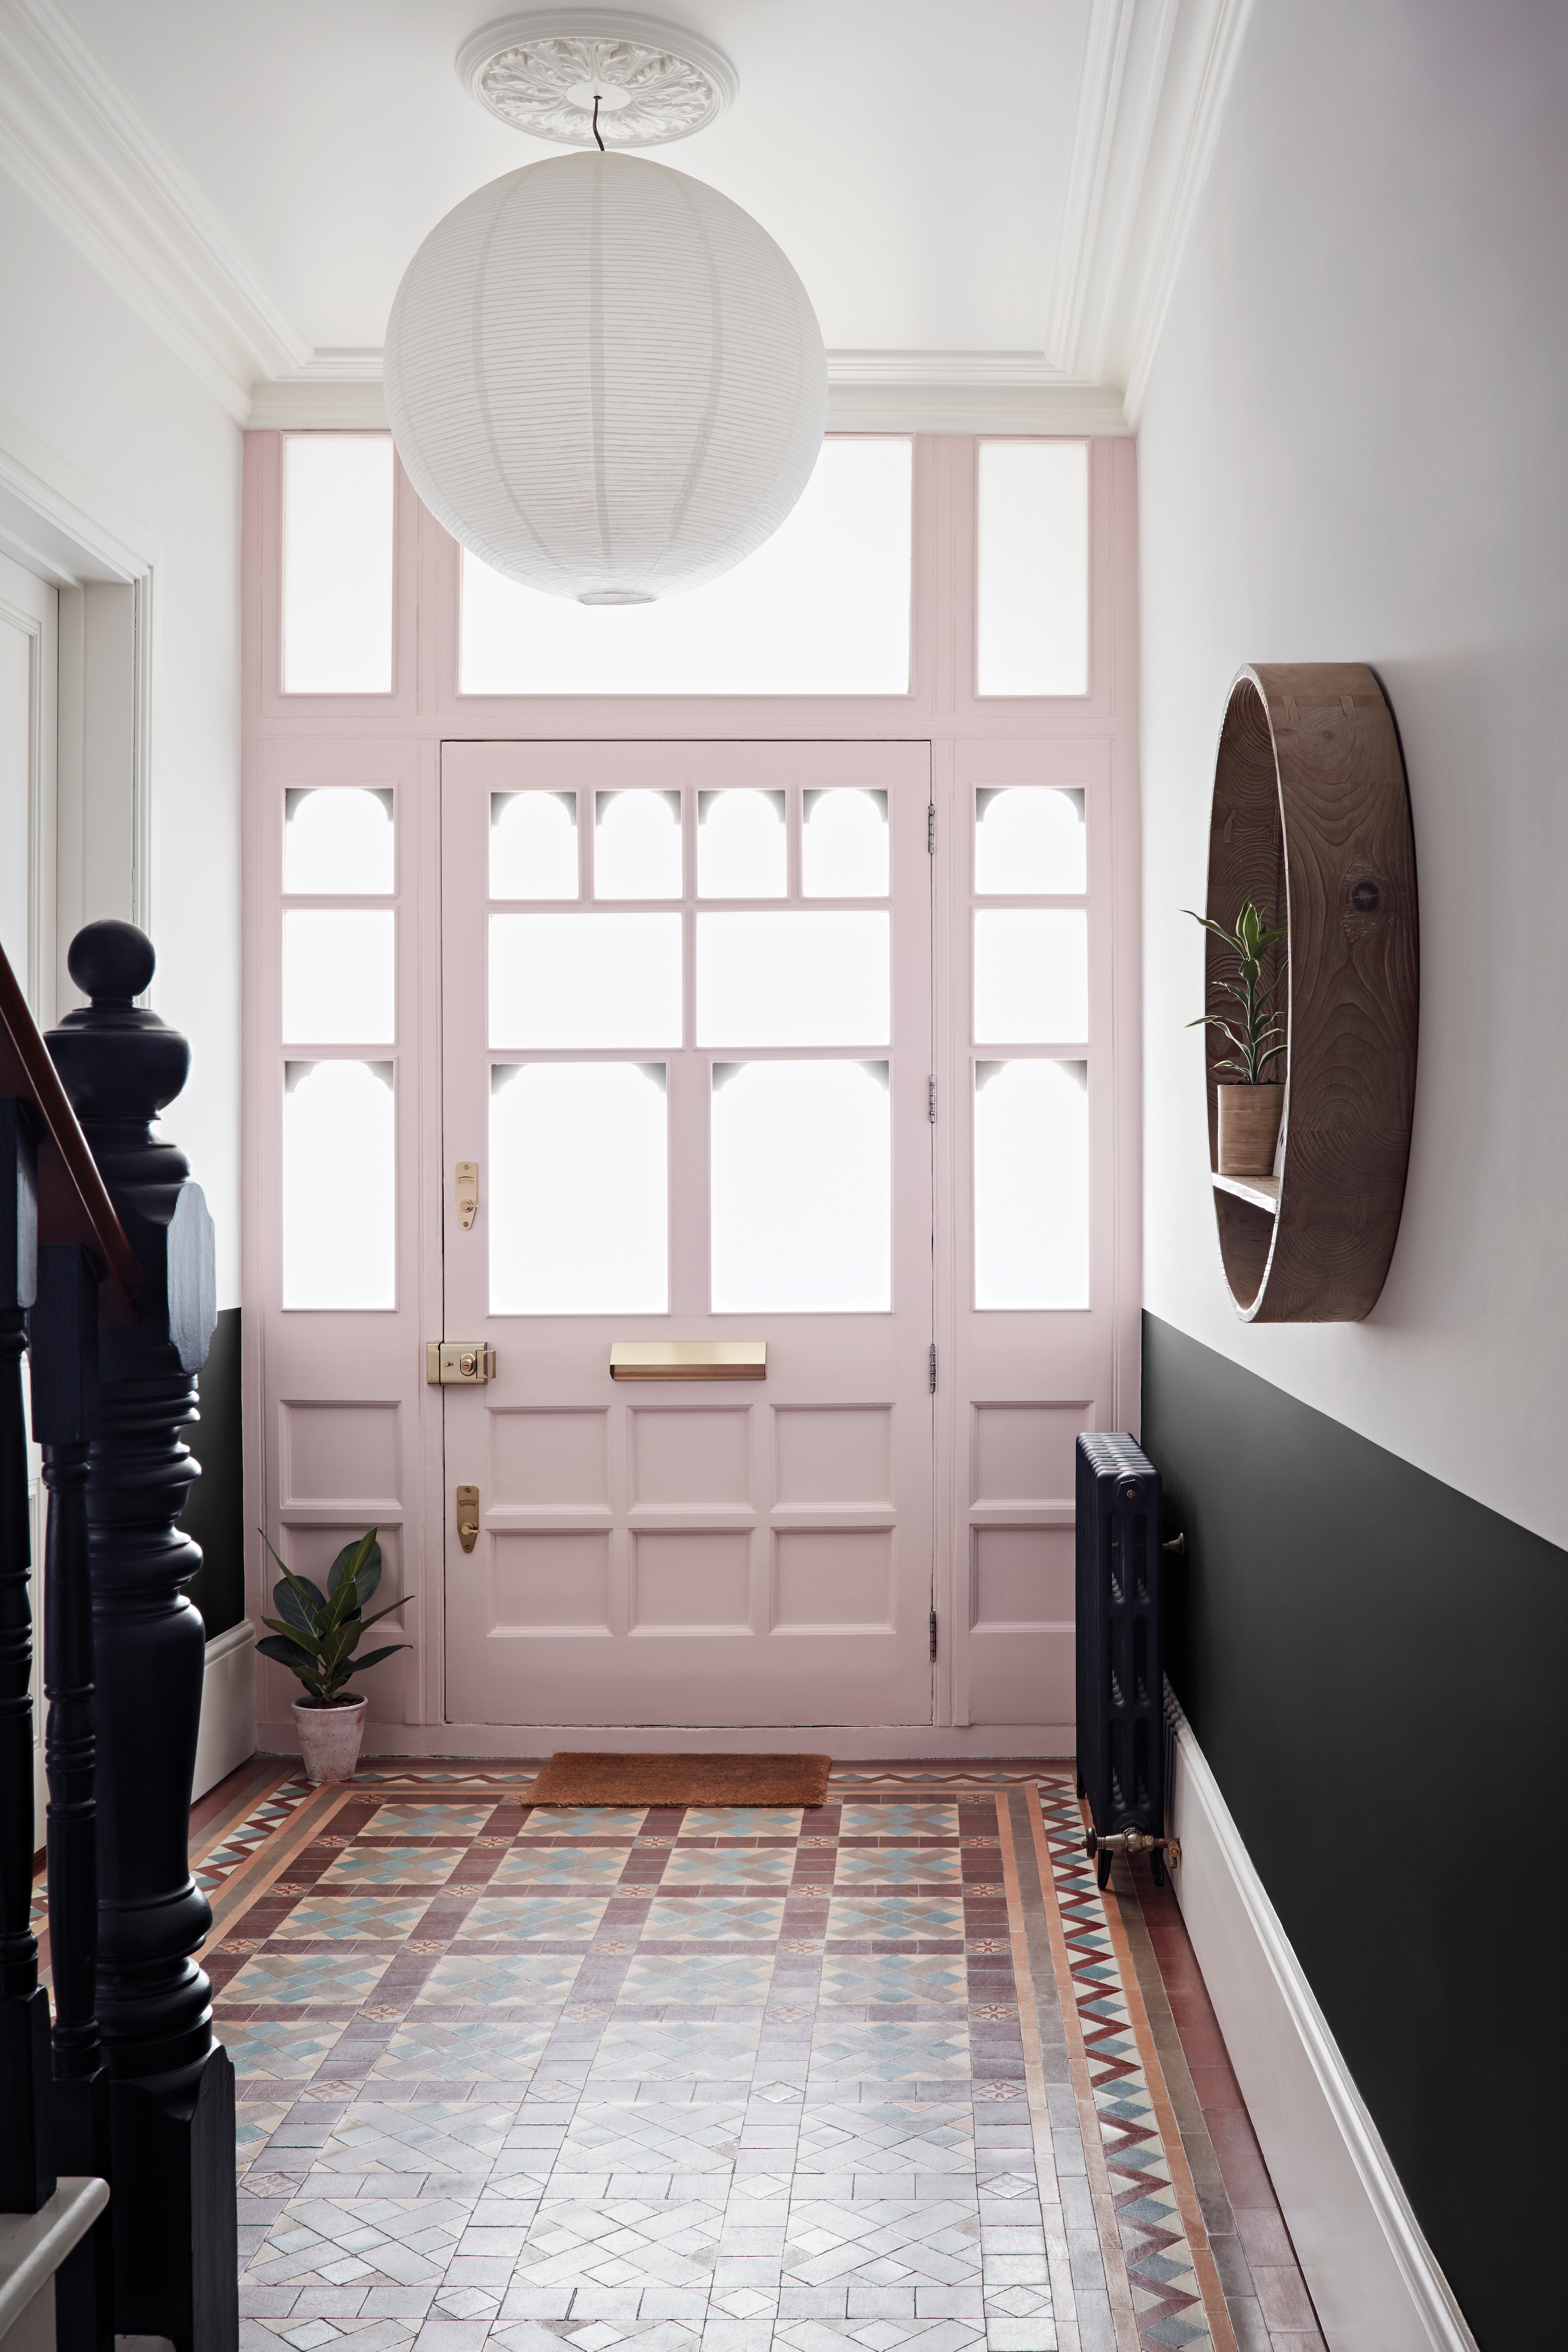 Couloir avec sol carrelé, mur inférieur en noir et supérieur en blanc, et porte d'entrée peinte en rose pâle